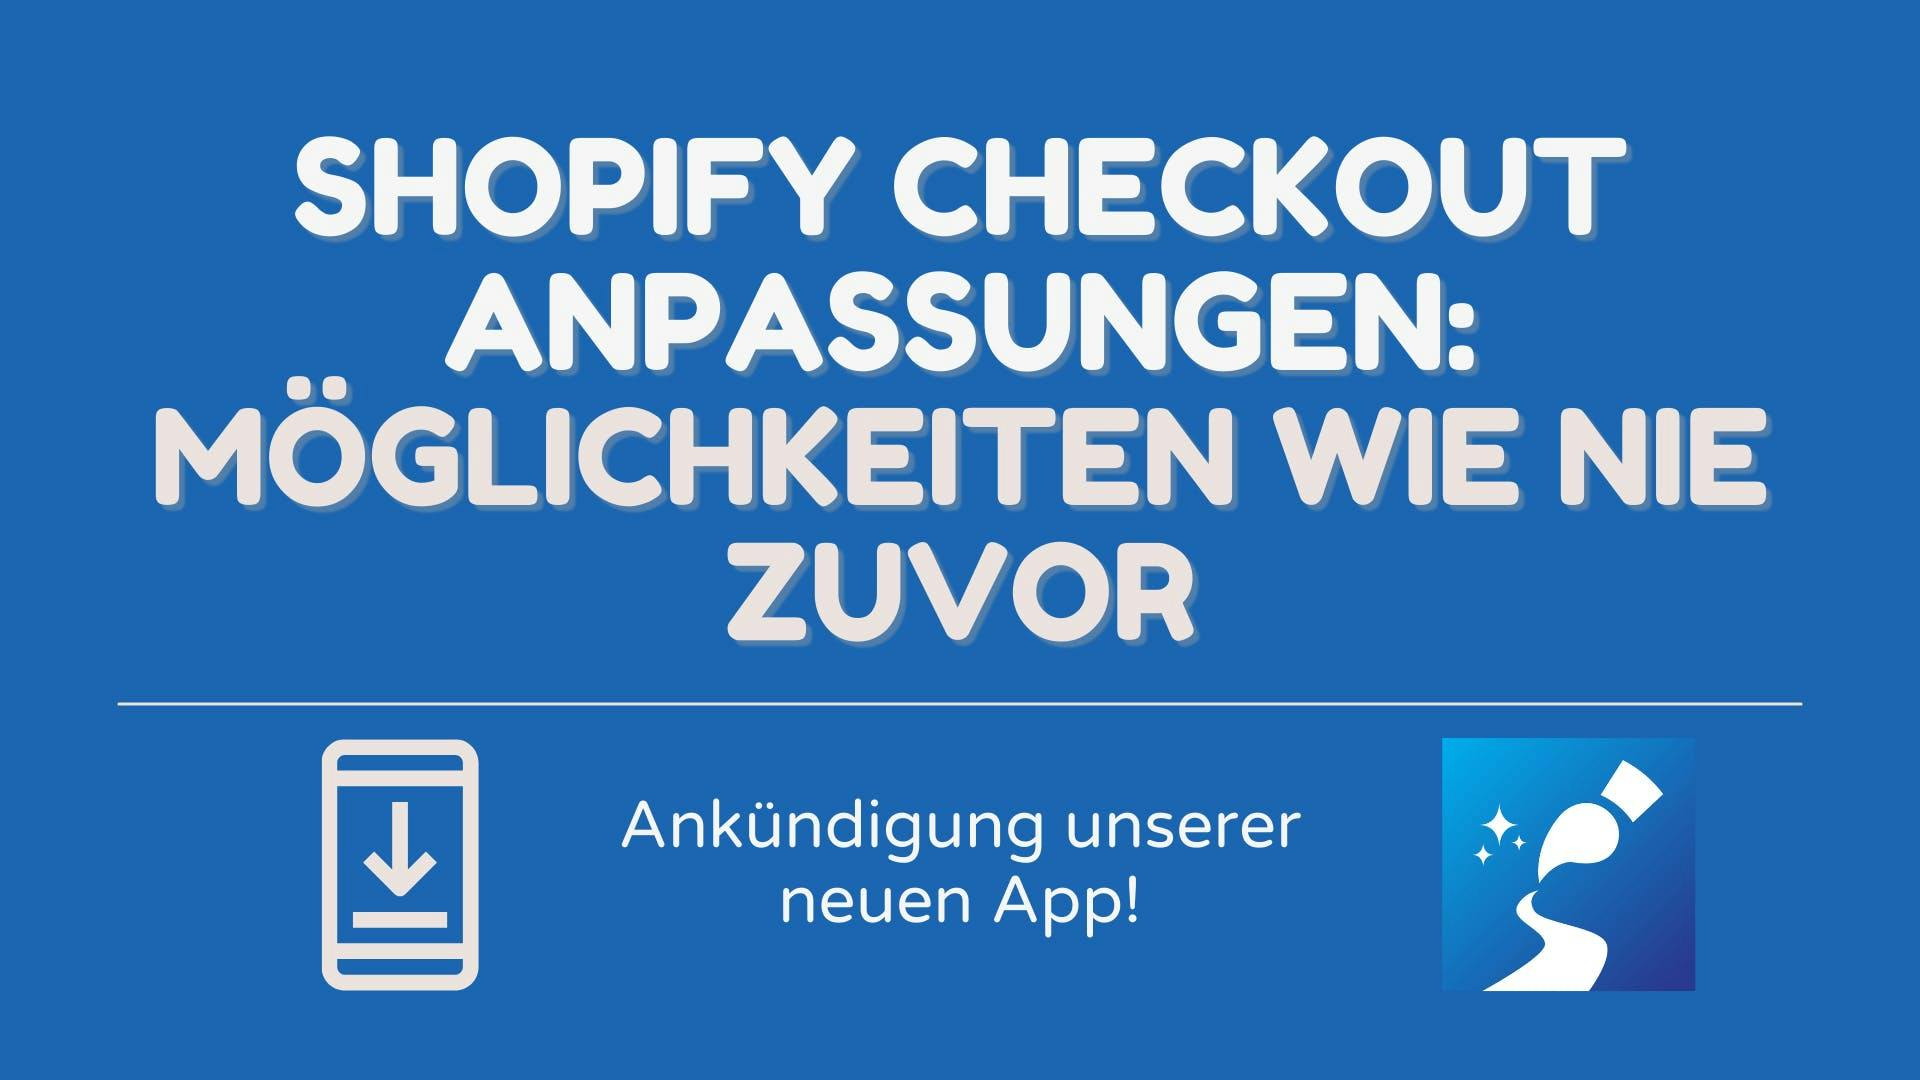 Shopify Checkout Anpassungen: Möglichkeiten wie nie zuvor - Ankündigung unserer neuen App!